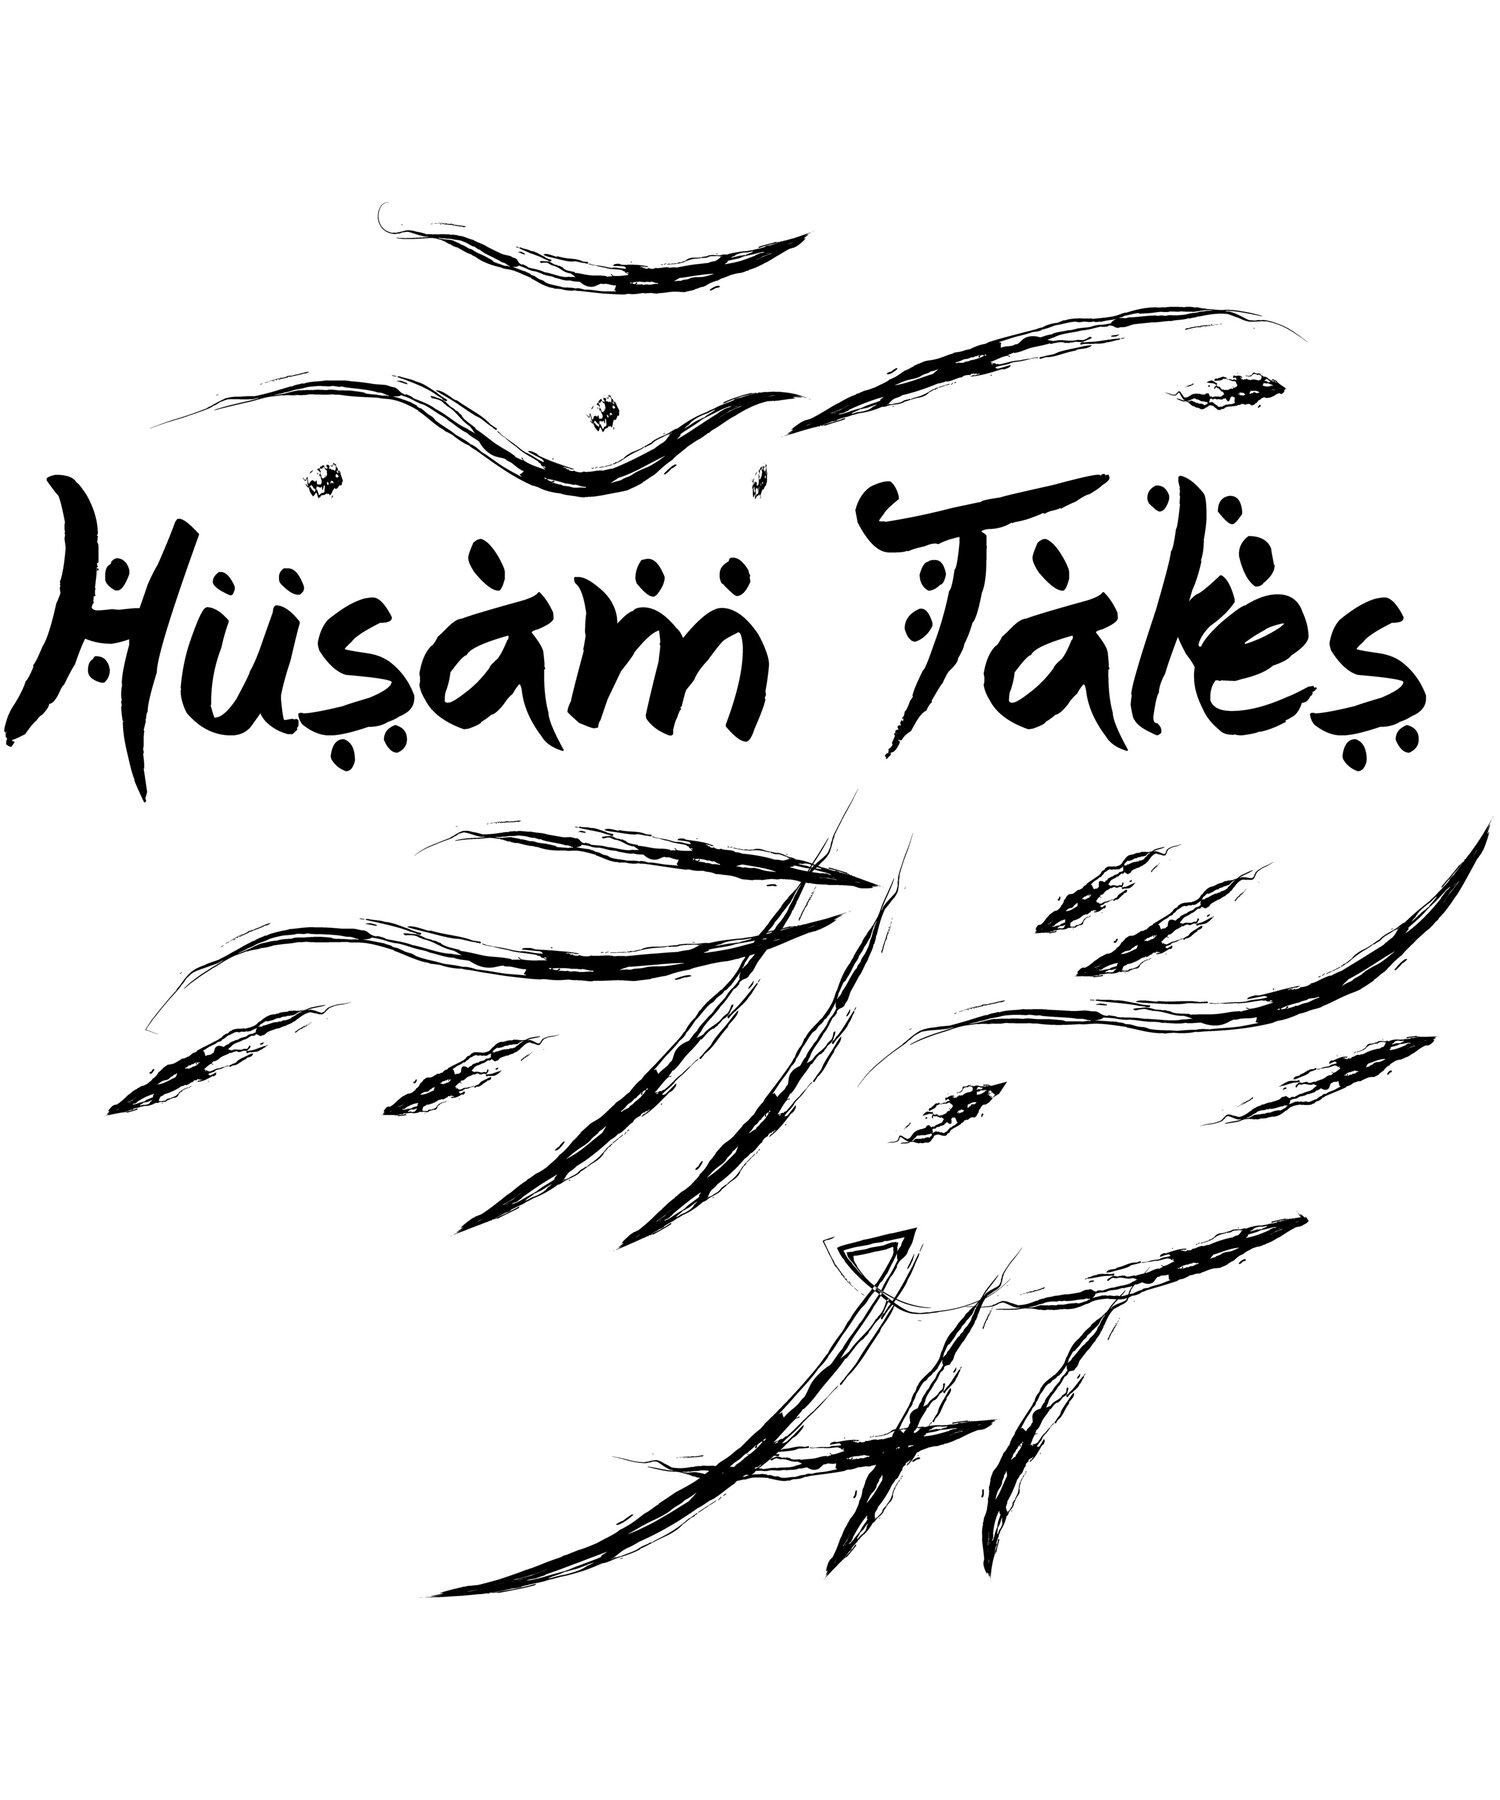 Husam Tales